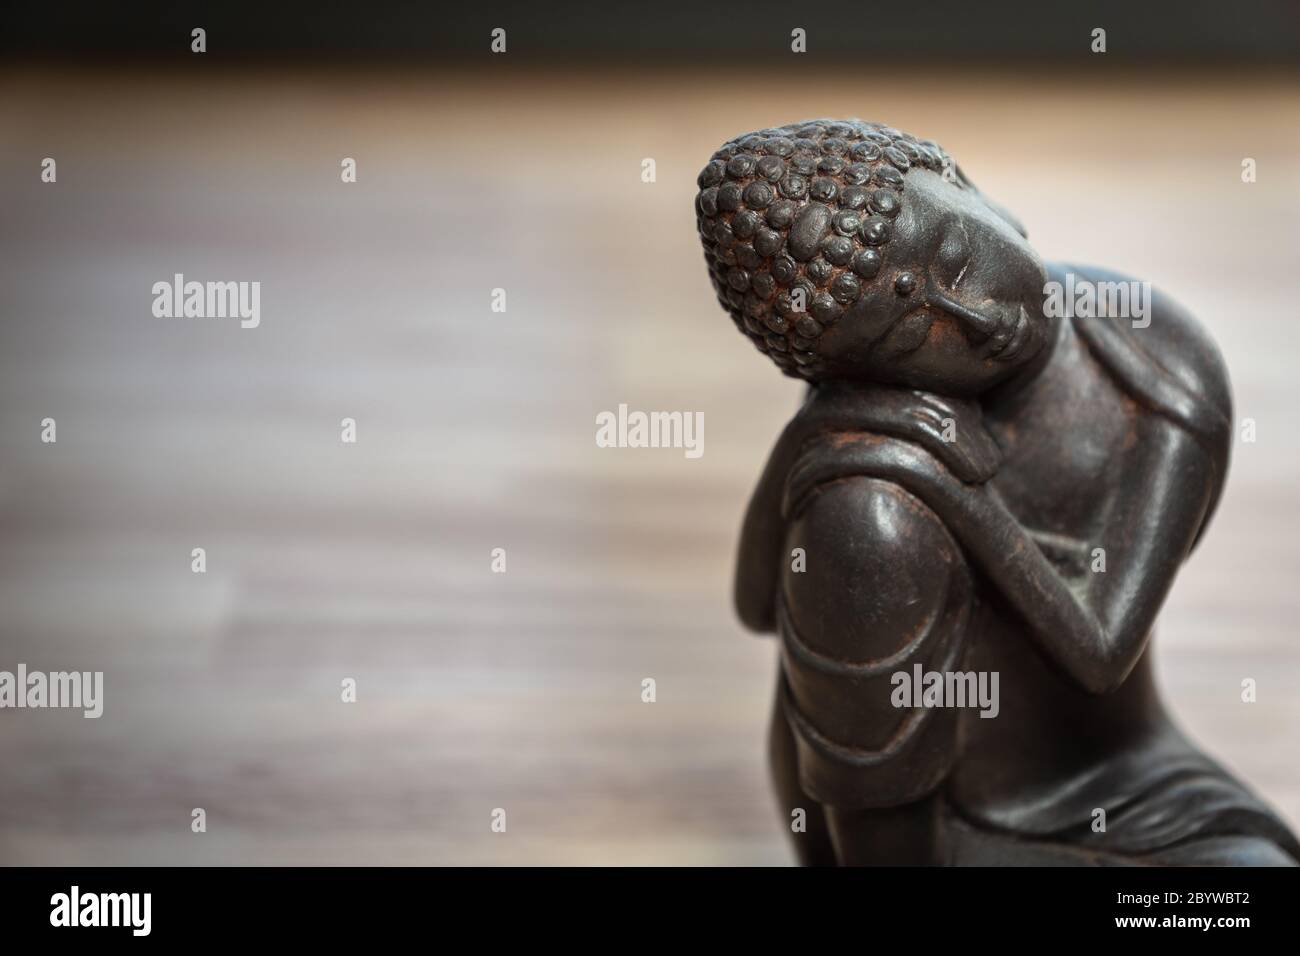 Escultura Buddah sobre escritorio - miniatura estatua buddah sobre escritorio - concepto de imagen para la mediación, atención, relajación, filosofía Foto de stock